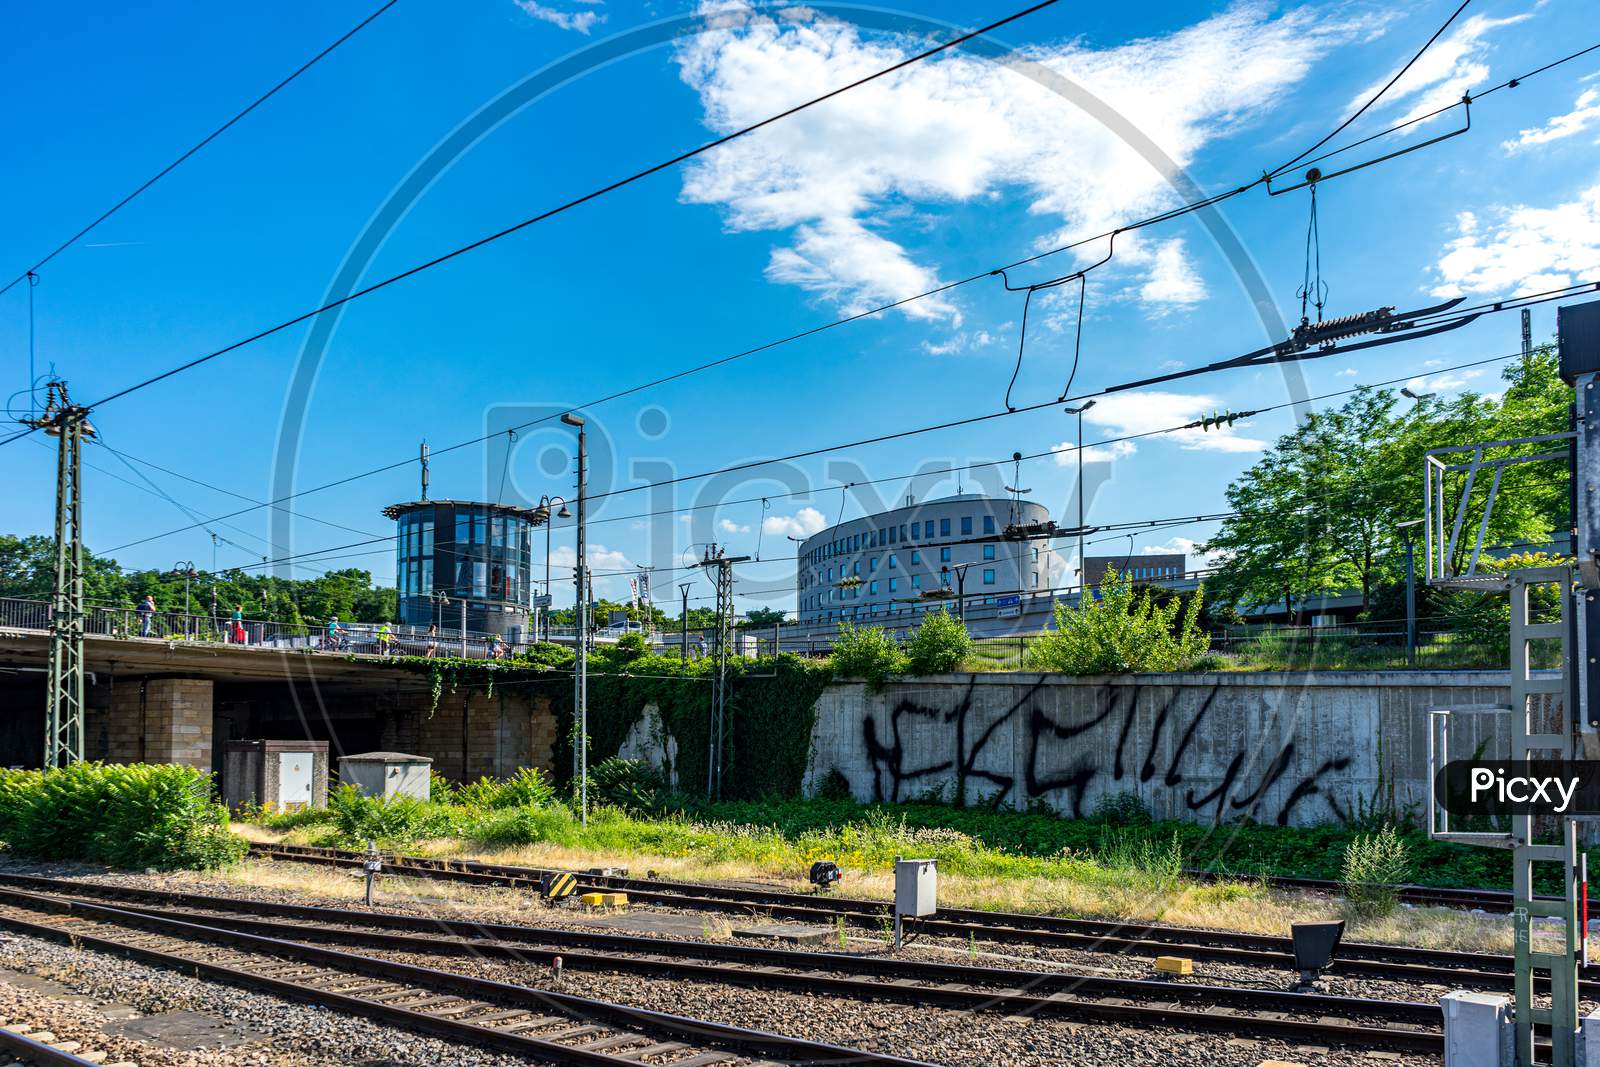 Germany, Heritage Site Mainz, A Train On A Train Track Near A Fence